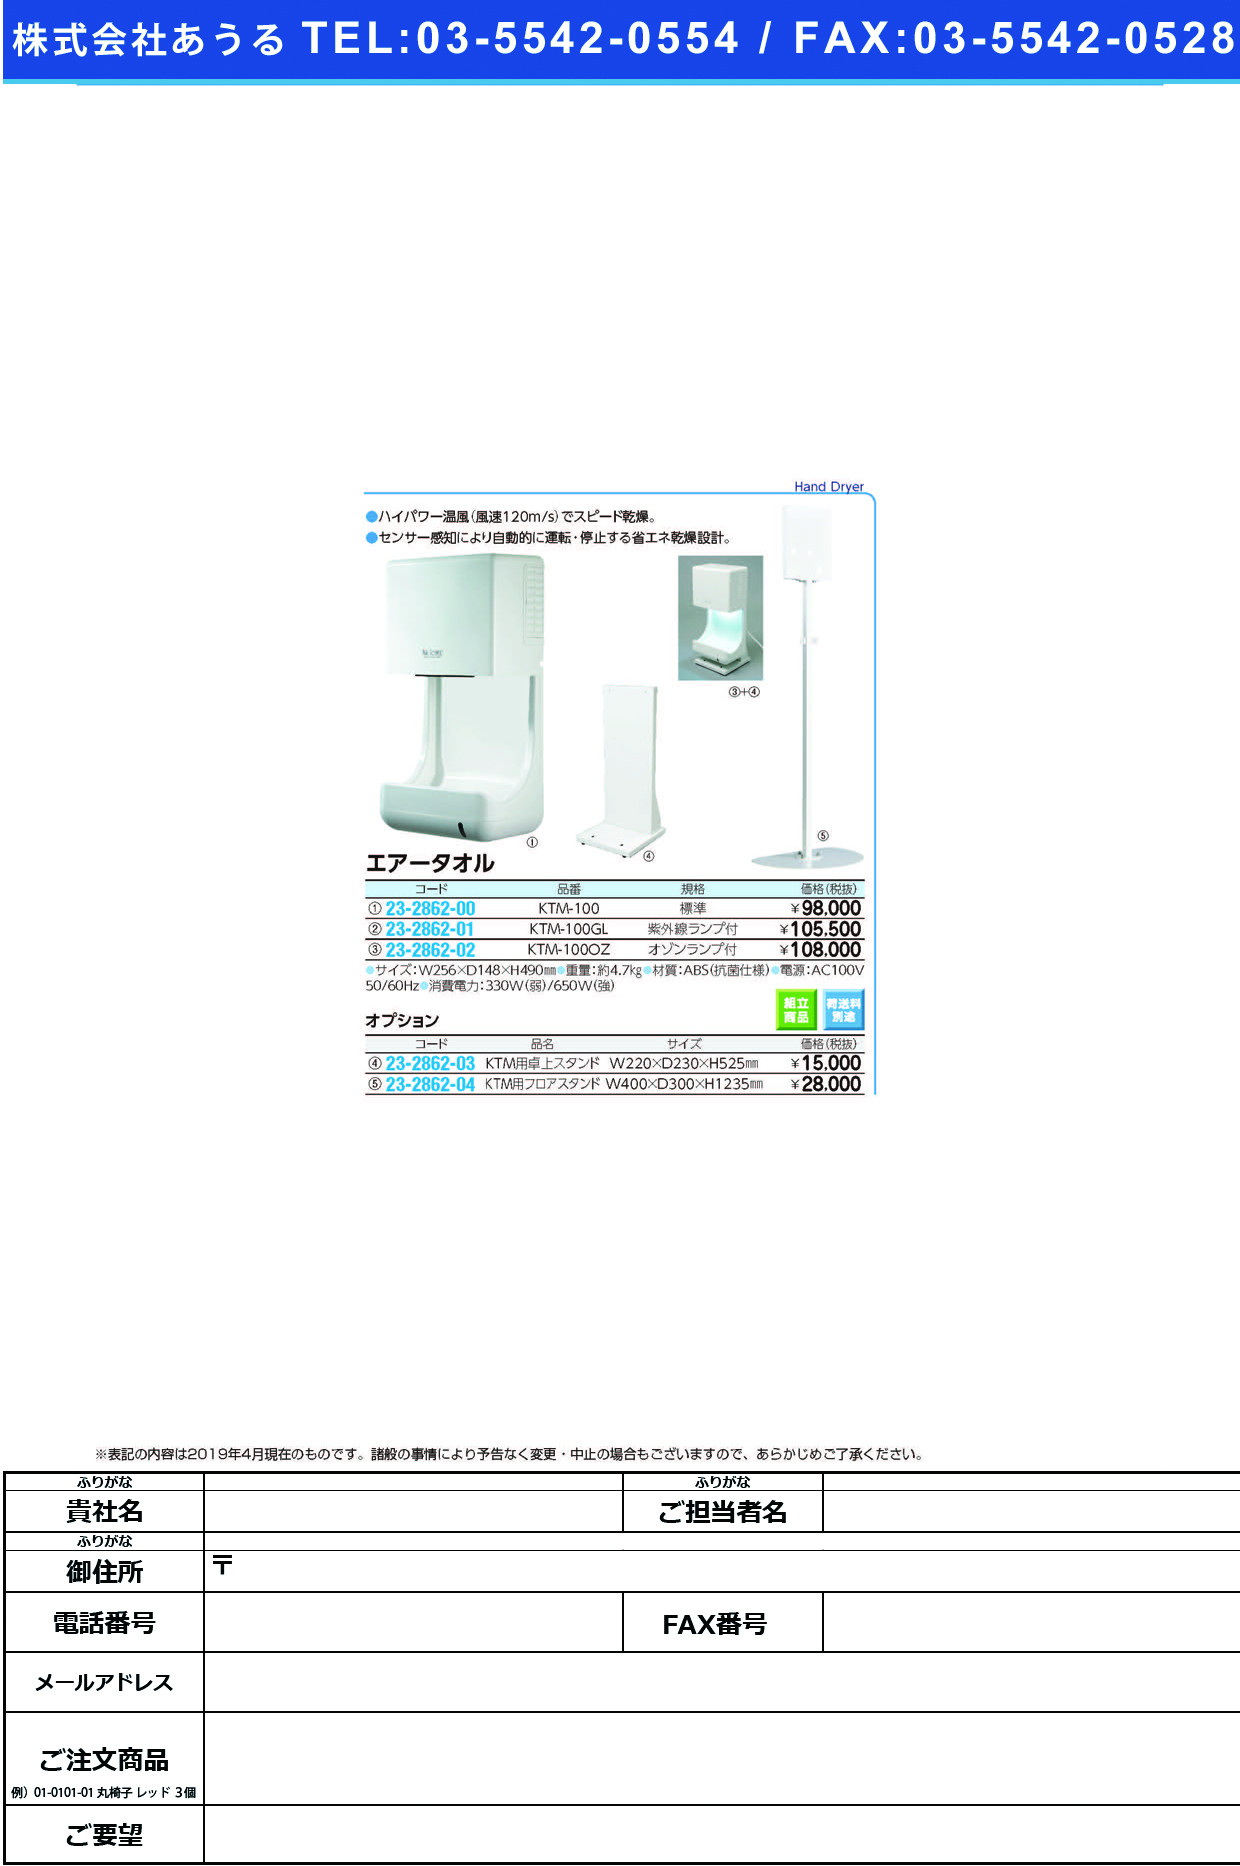 (23-2862-01)エアータオル（紫外線ランプ４Ｗ付） KTM-100GL ｴｱｰﾀｵﾙ(ｼｶﾞｲｾﾝﾗﾝﾌﾟﾂｷ)【1台単位】【2019年カタログ商品】